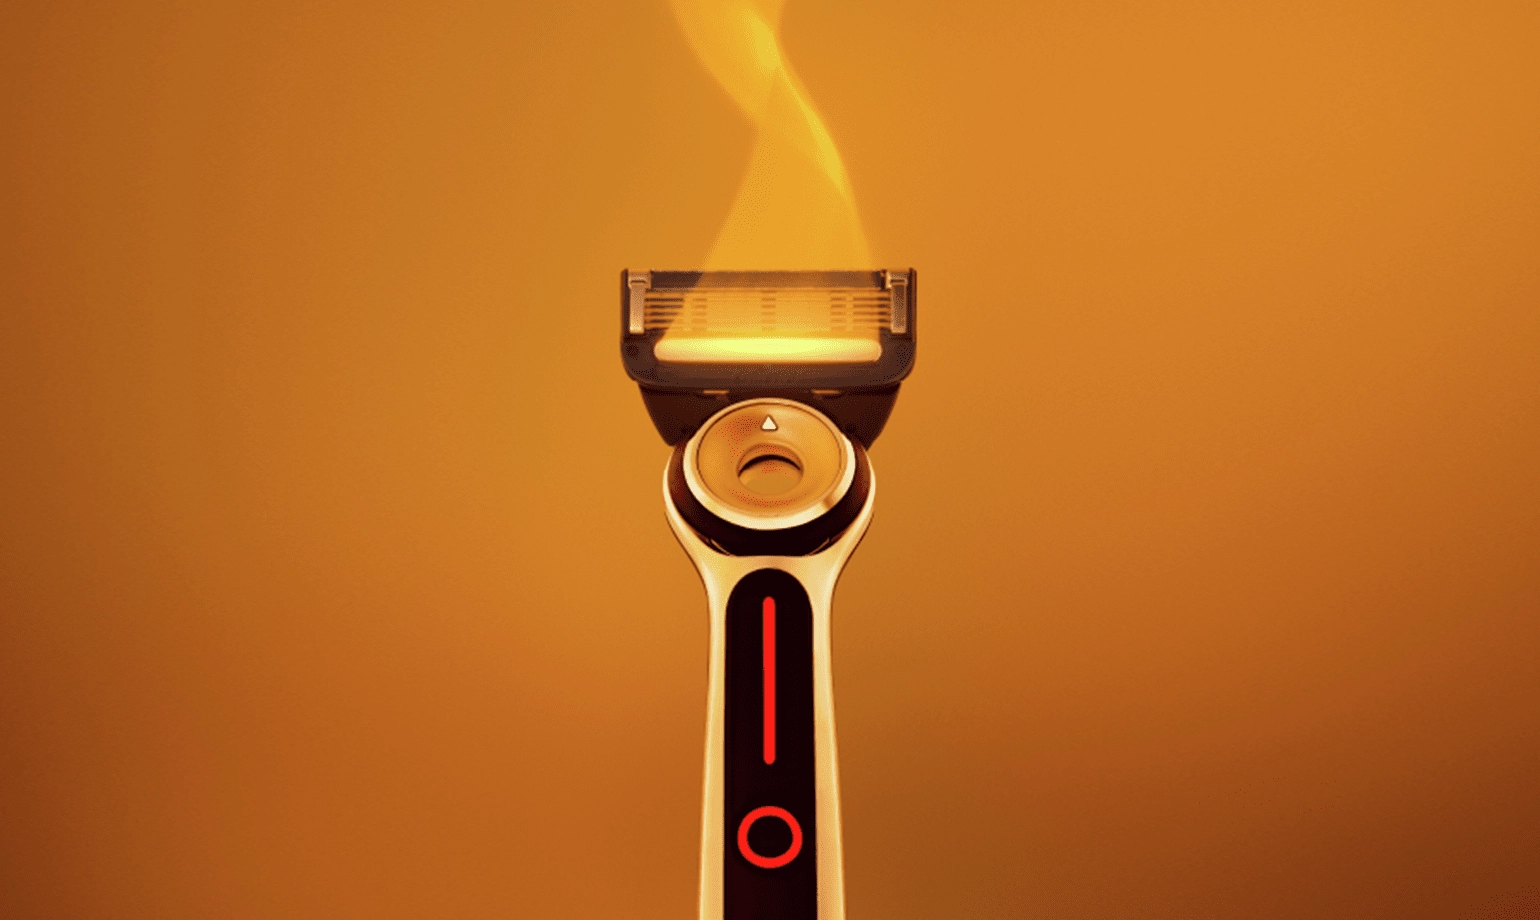 Il GilletteLabs Heated Razor fornisce calore emolliente al solo tocco di un bottone.